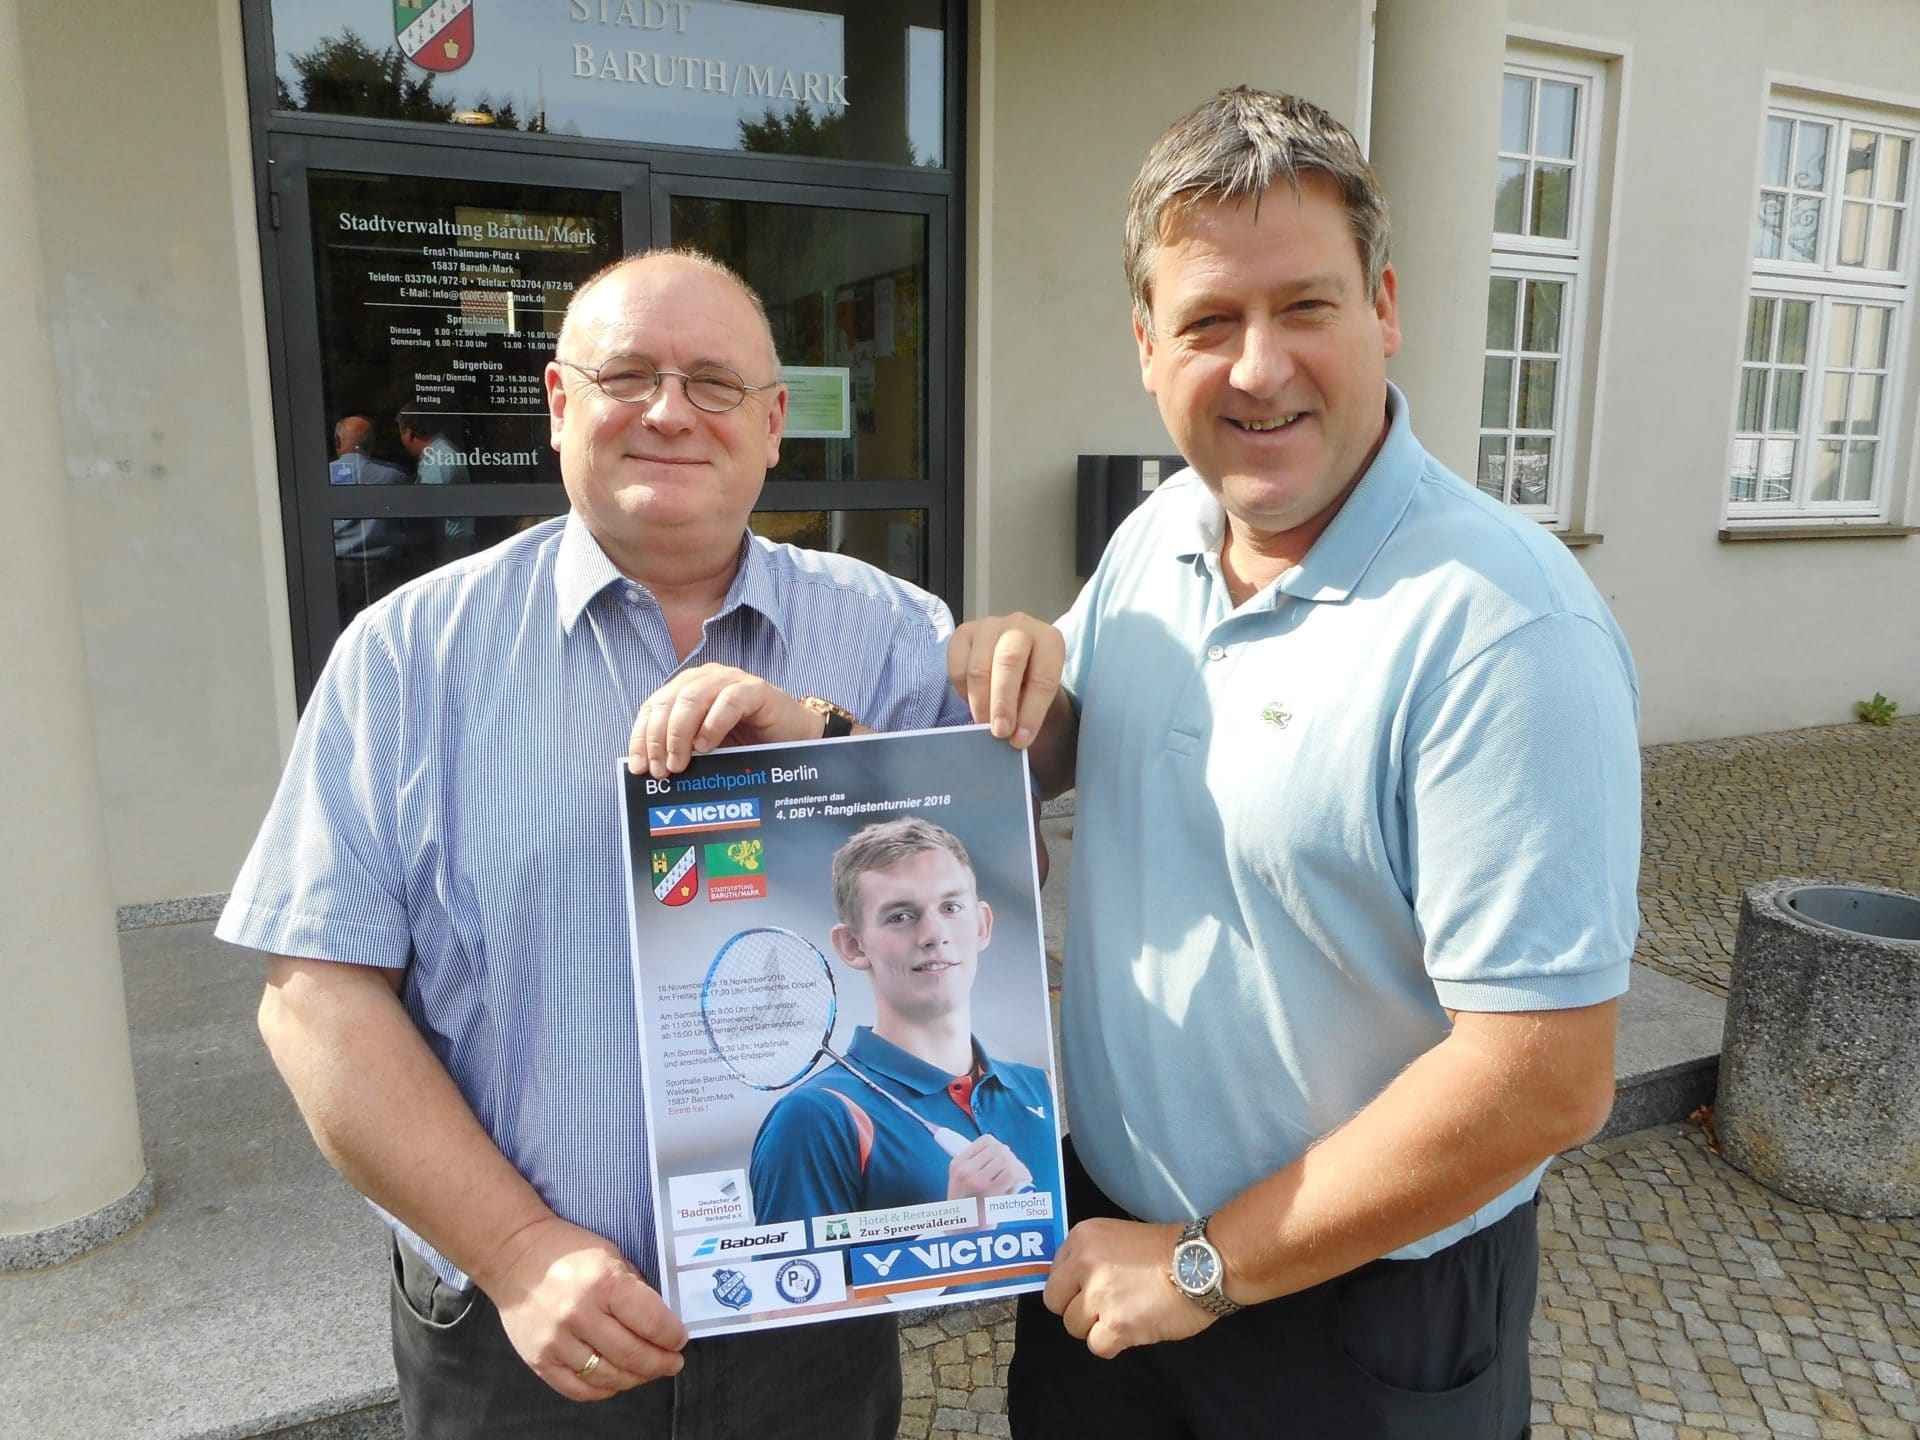 Foto mit dem Bürgermeister der Stadt Baruth/Mark Herrn Ilk und dem Ausrichter Christian Holzmacher vom BC Matchpoint Berlin